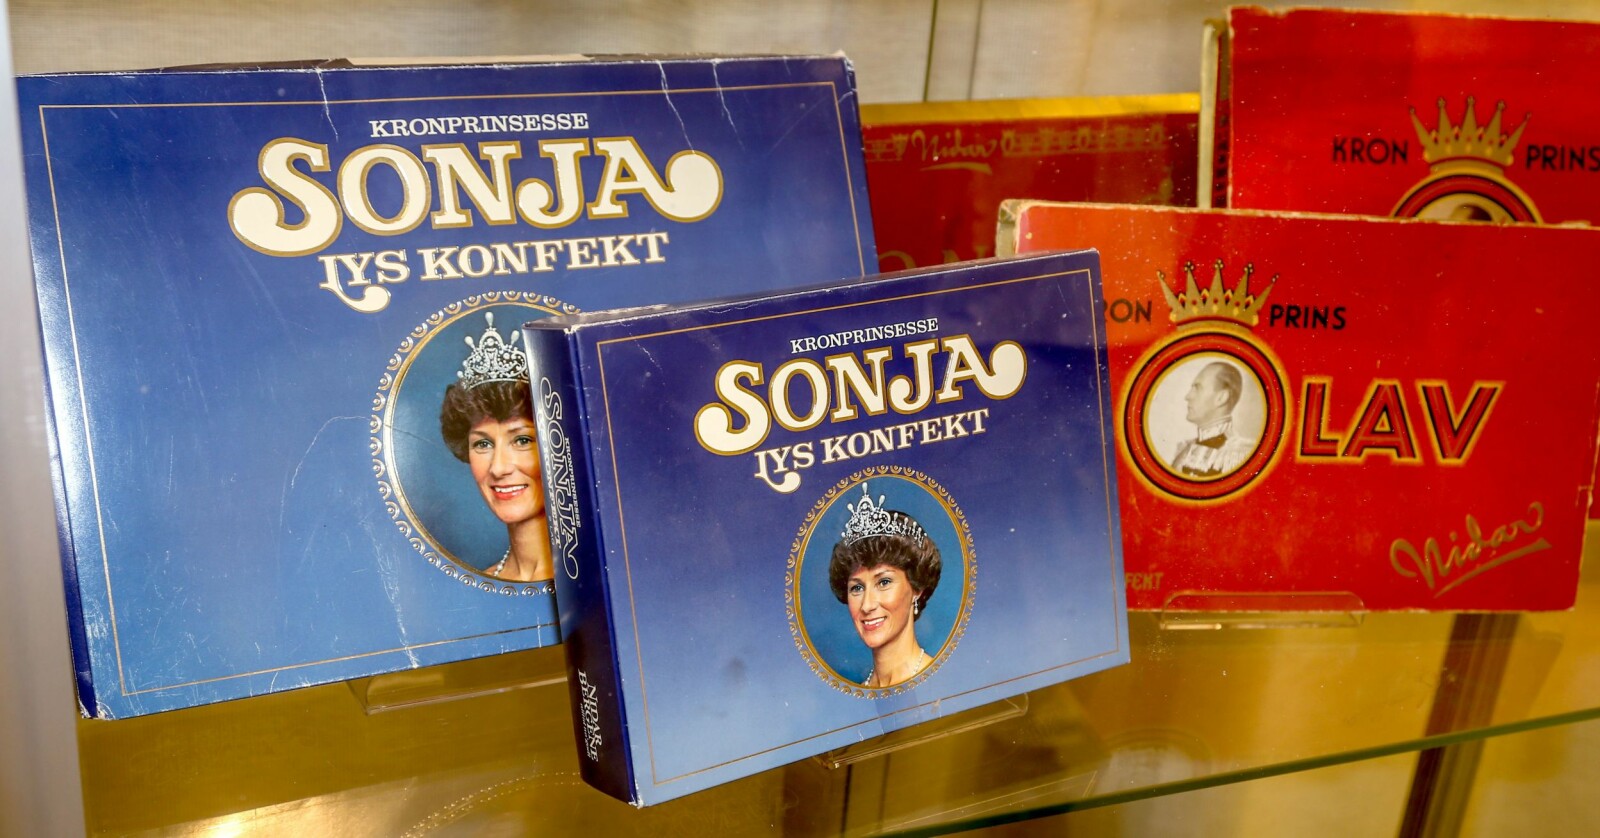 <span class=bold>ROYAL</span> Ingen har noensinne laget Mette-Marit-konfekt, men både kronprins Olav og kronprinsesse Sonja har prydet konfekt fra Nidar. Sonja-varianten var i salg helt til 1995.